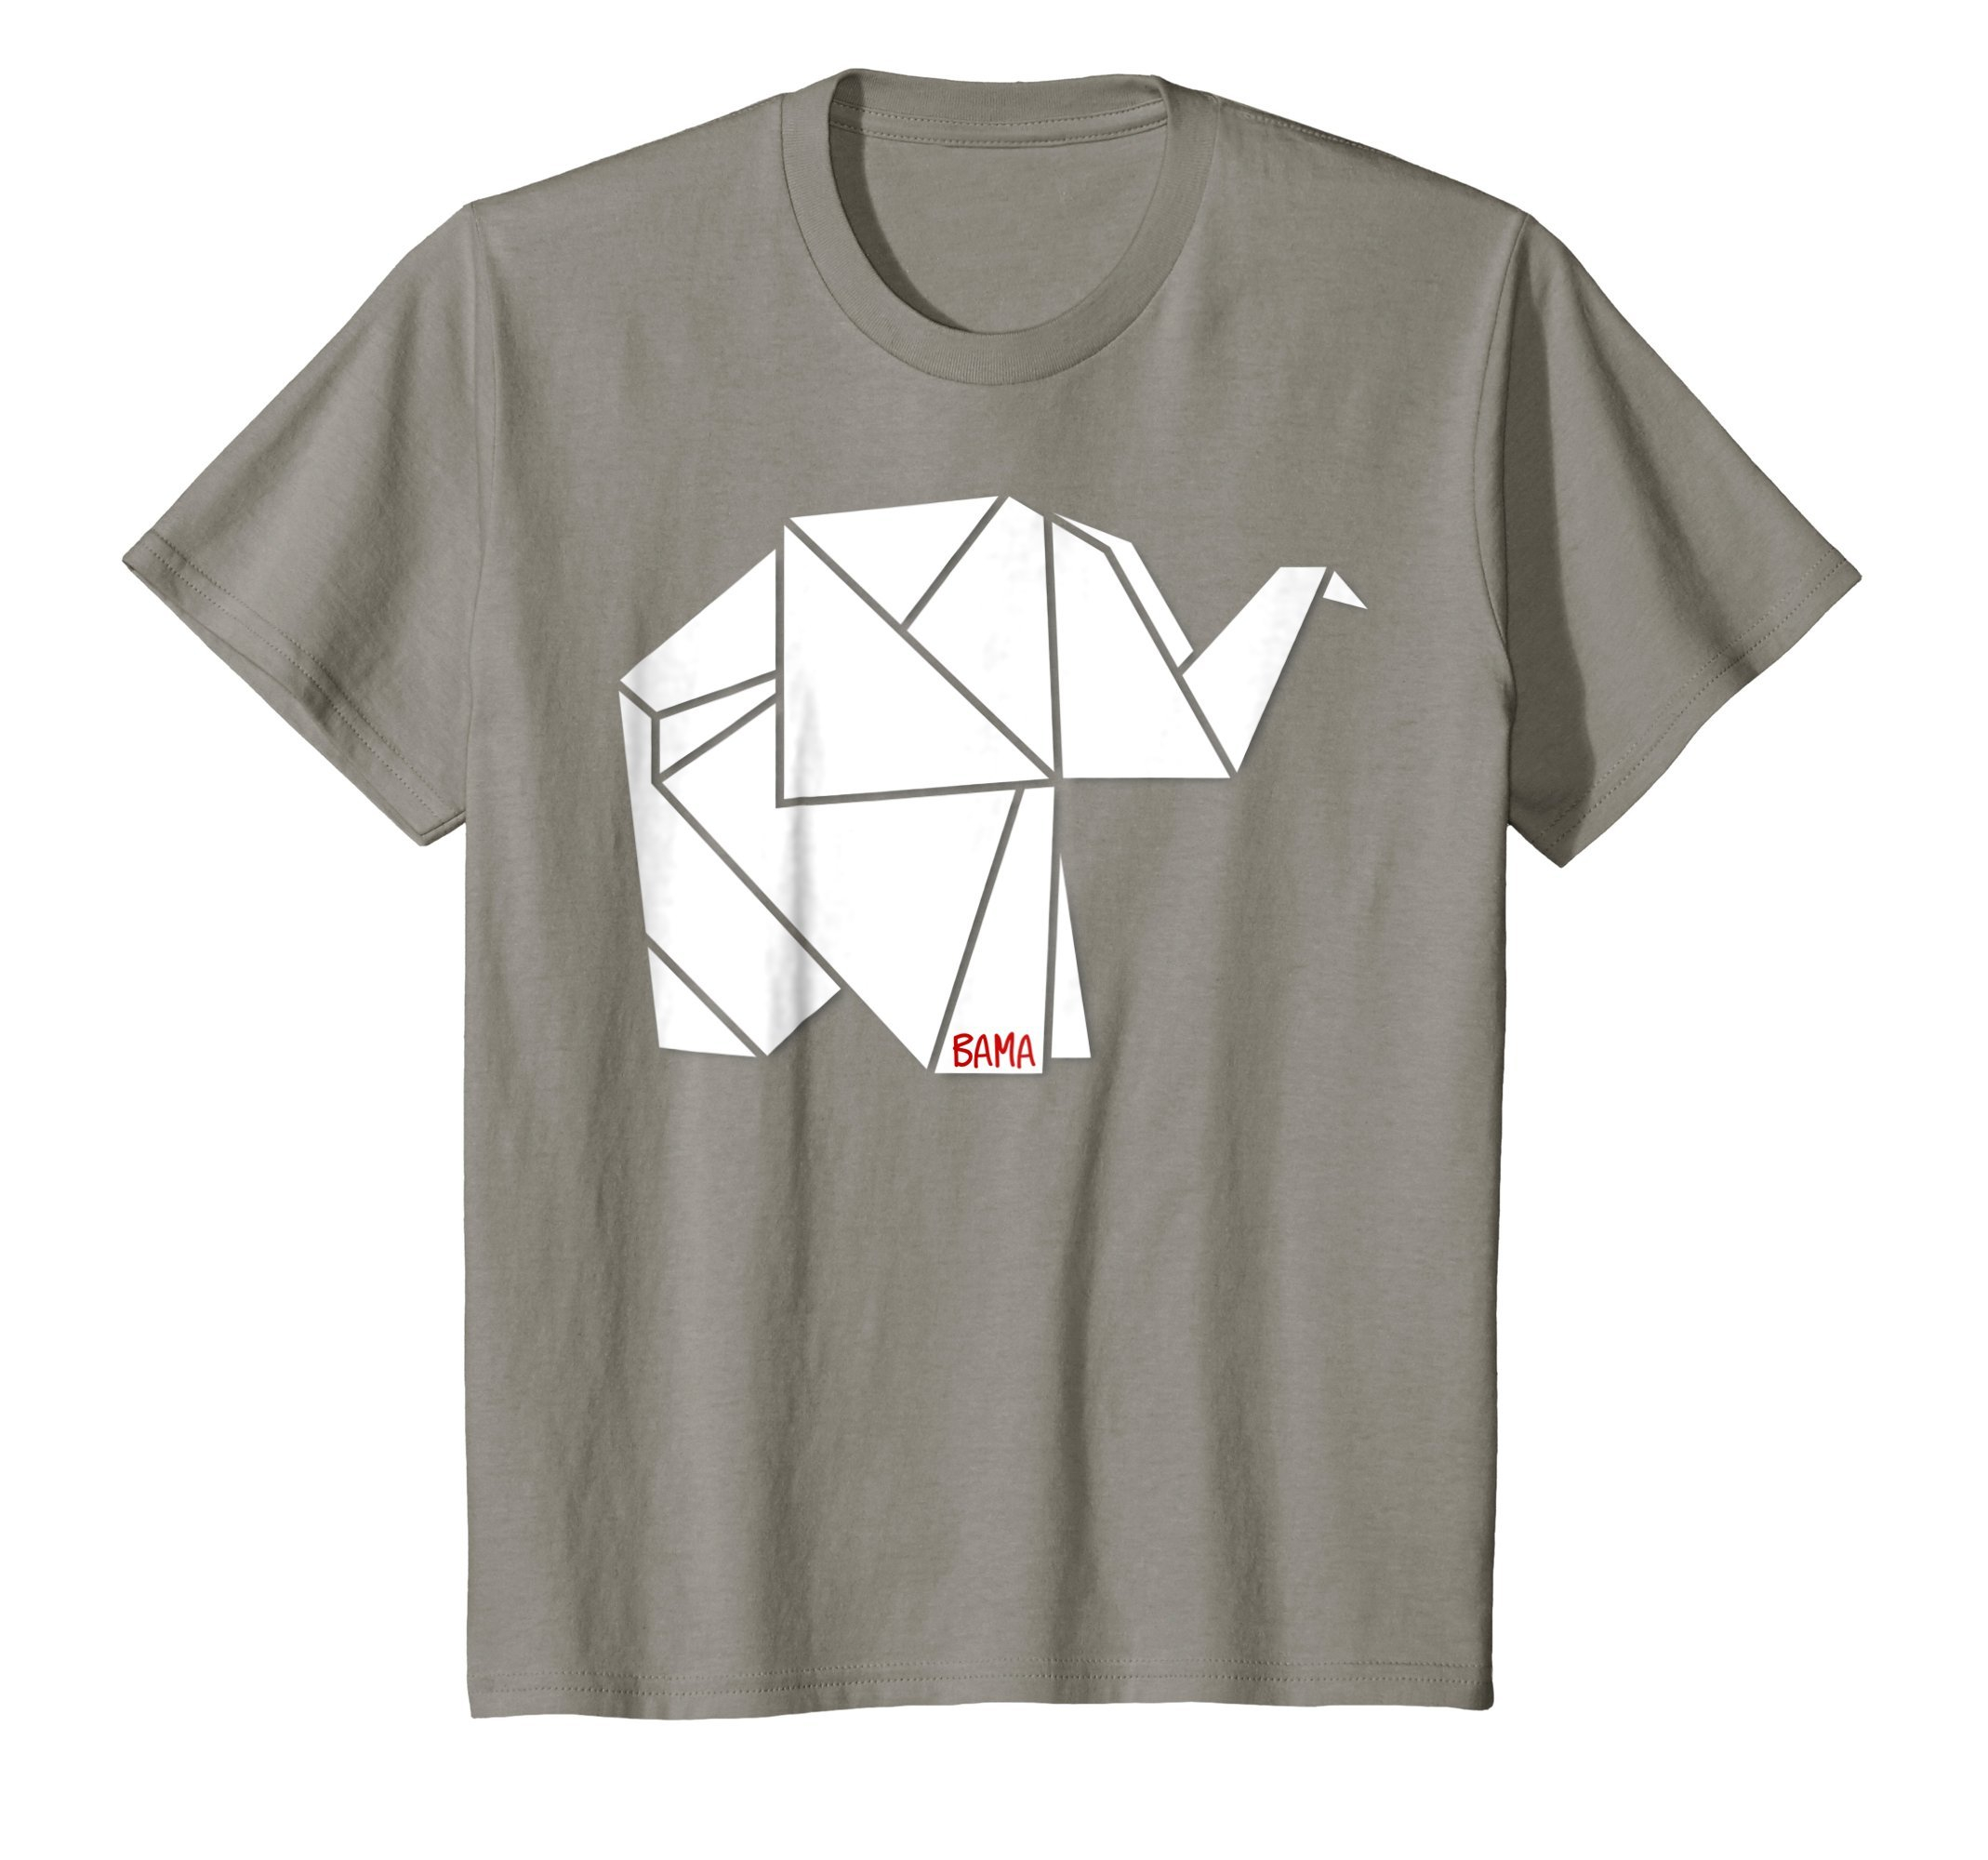 Origami Elephant For Kids Kids Origami Elephant Bama T Shirt 6 Slate Merry Jeepas T Shirt Store